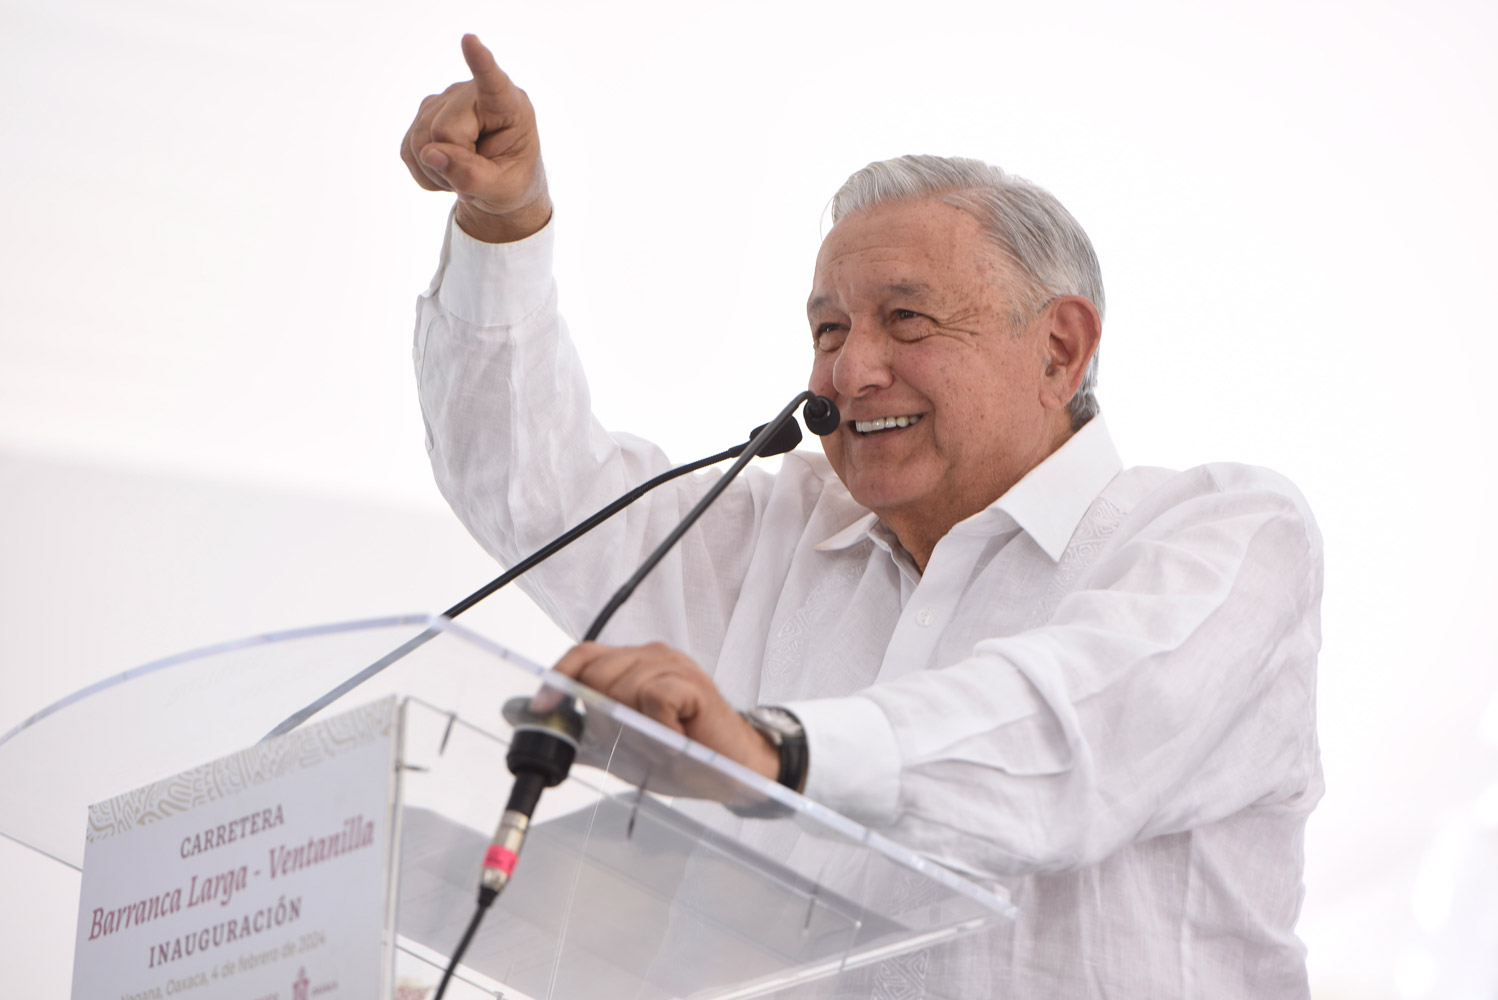 El presidente Andrés Manuel López Obrador inaugura carretera Oaxaca-Puerto Escondido